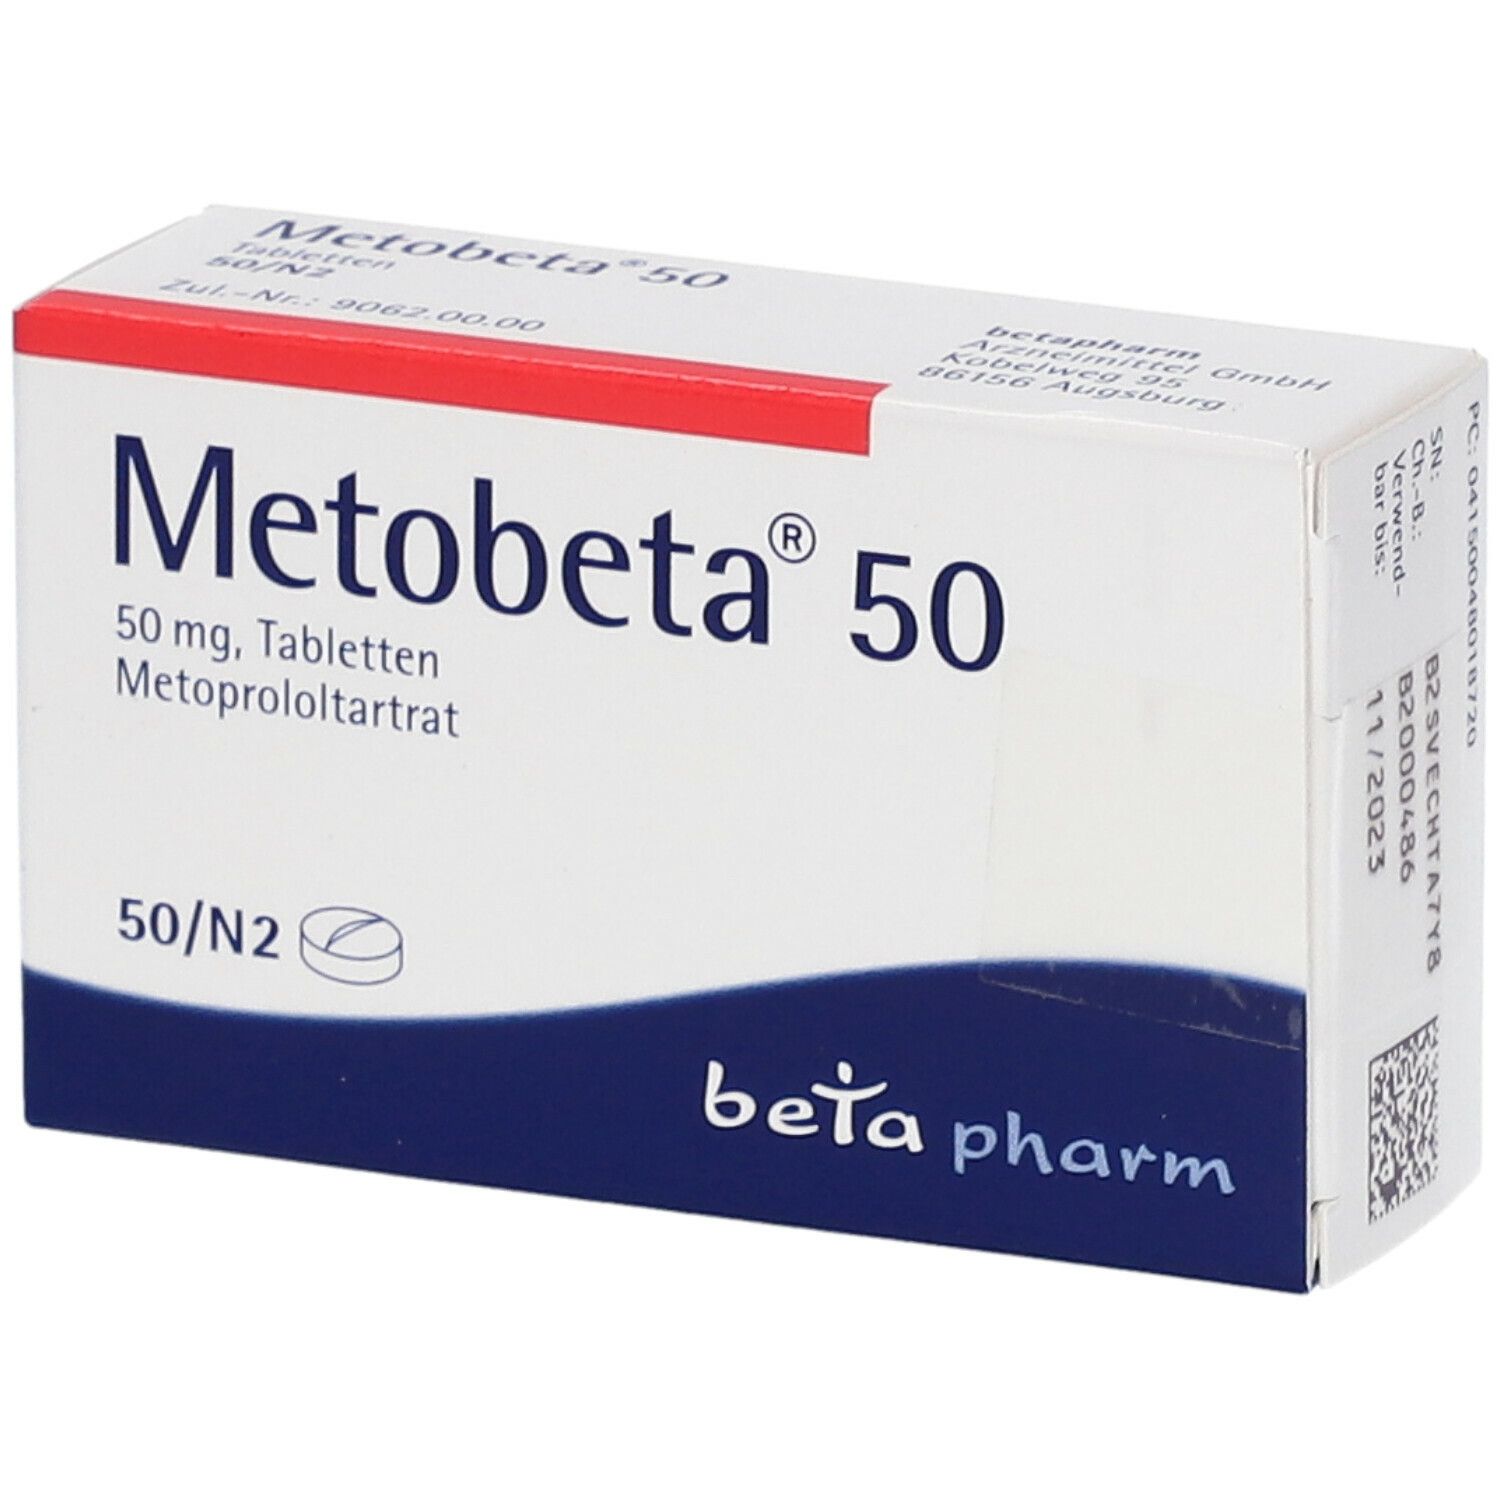 Metobeta® 50